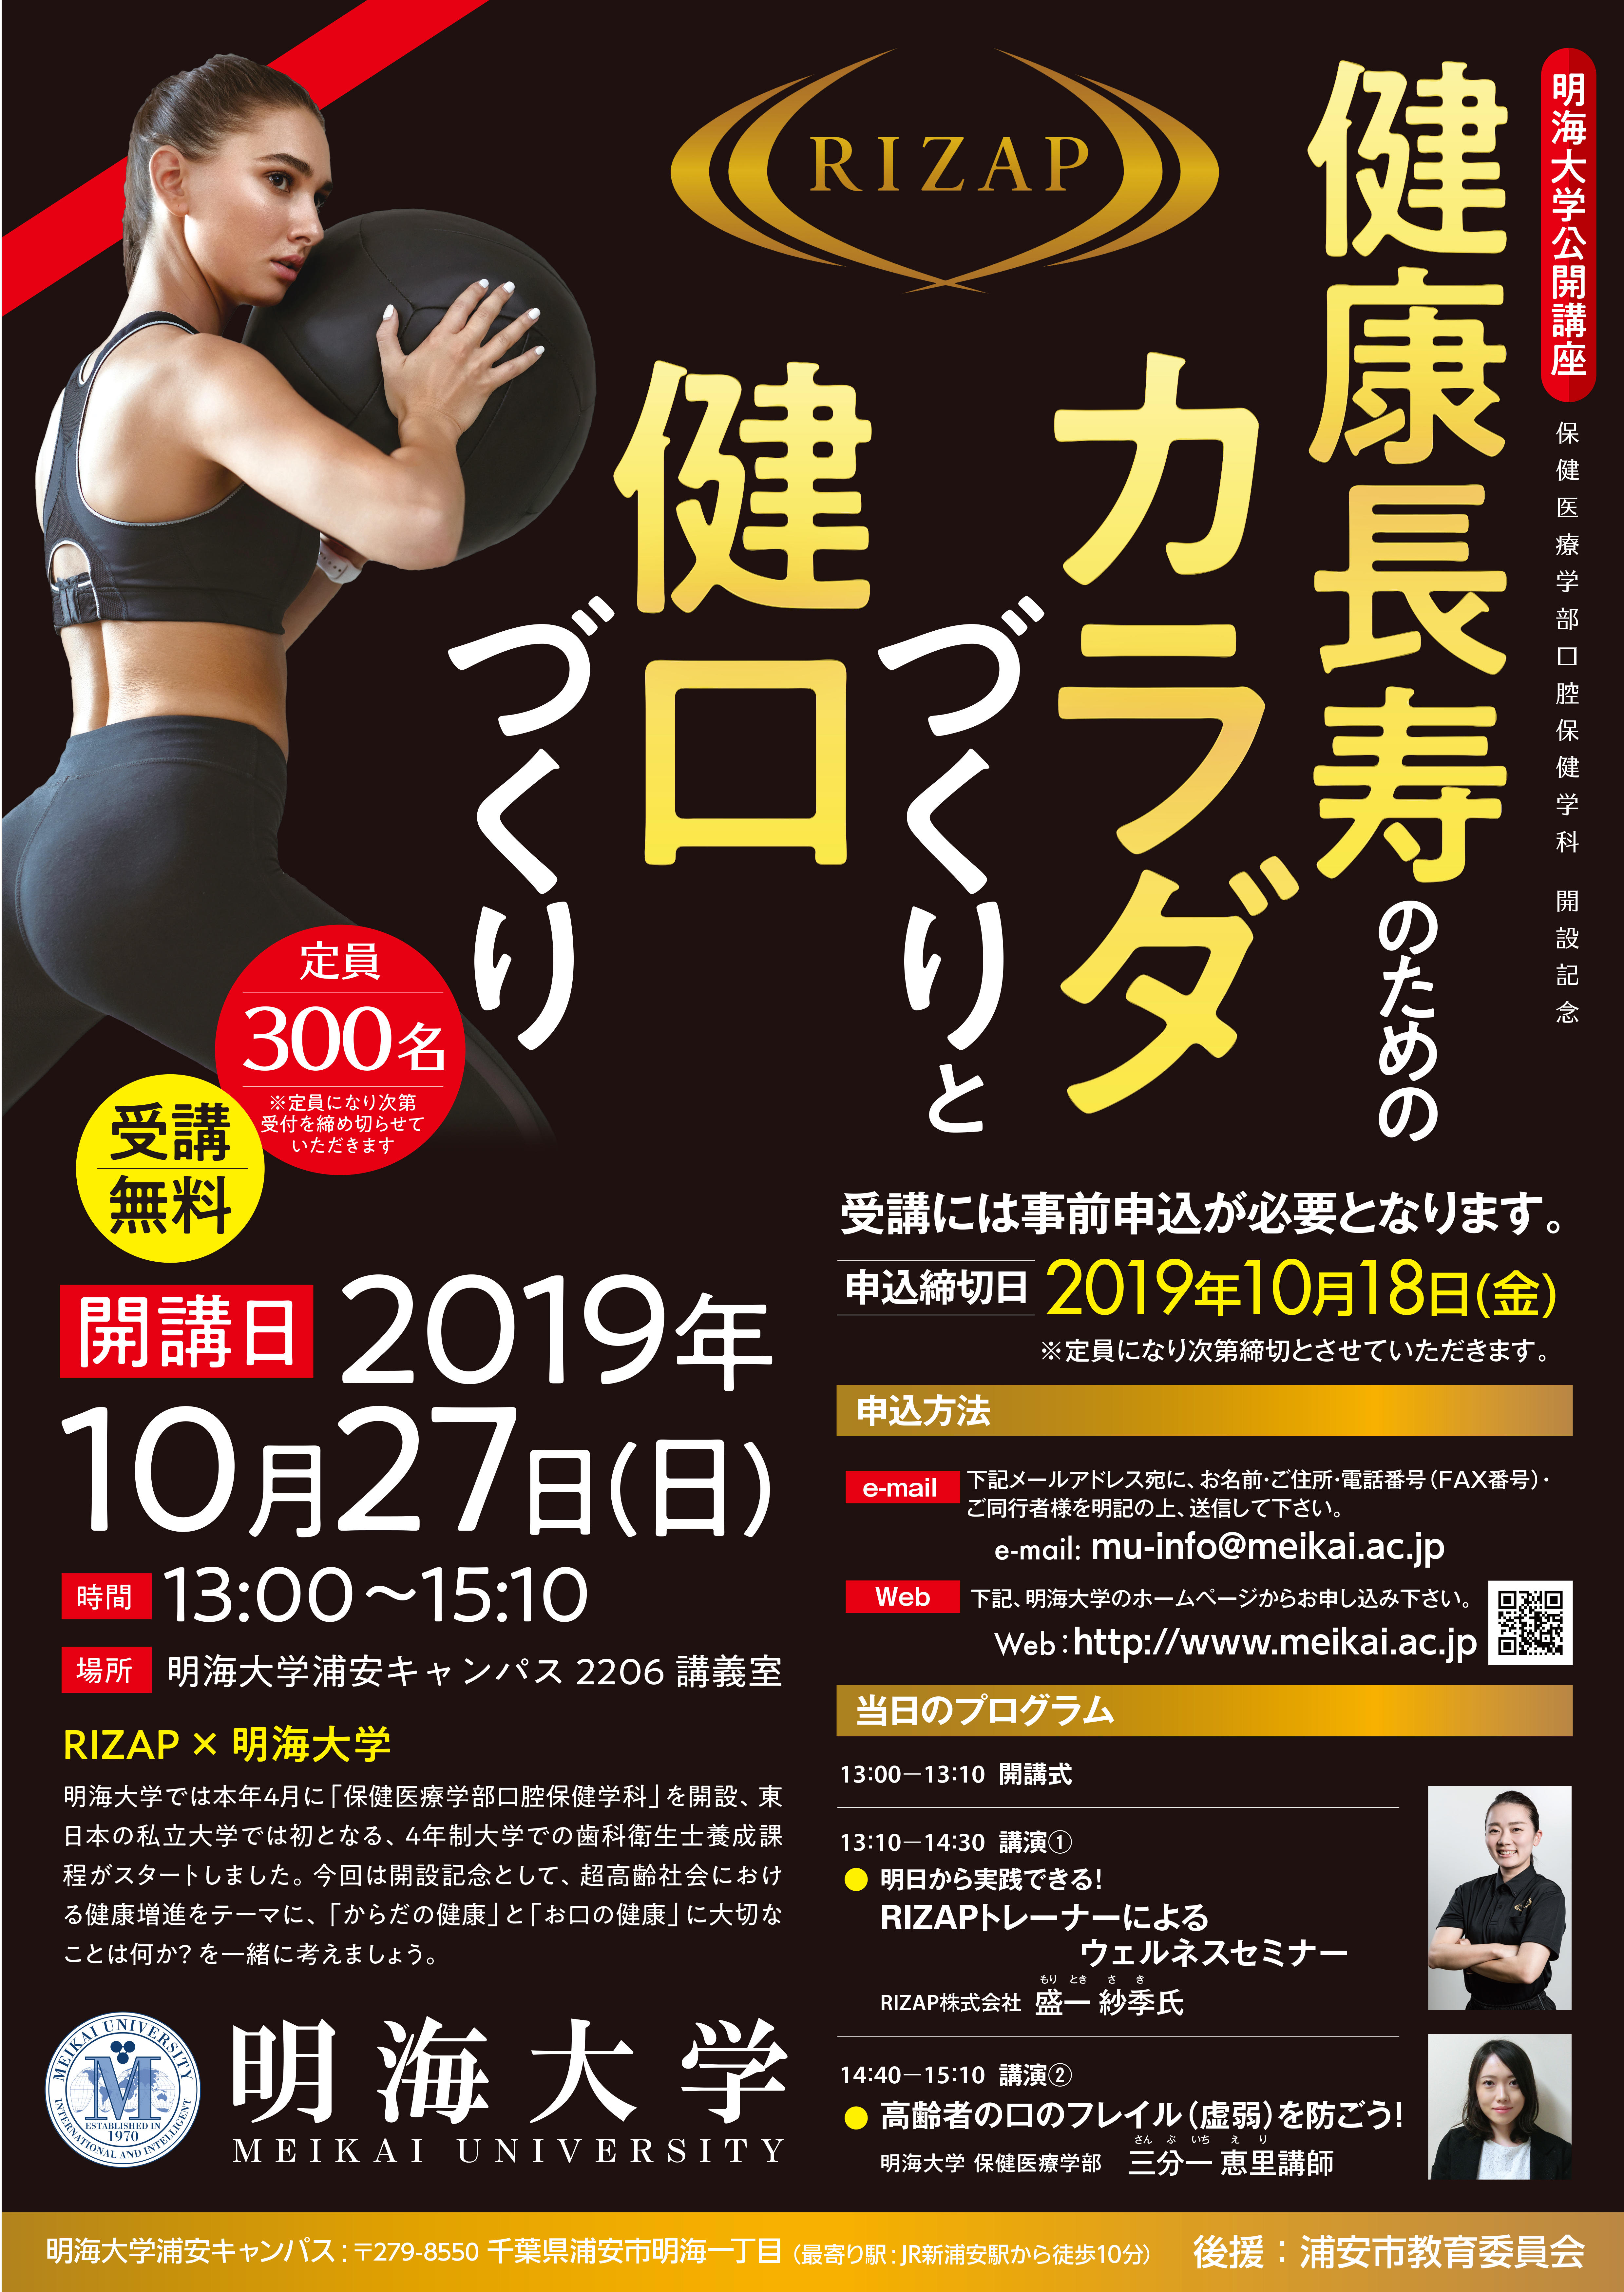 明海大学浦安キャンパス公開講座「健康長寿のためのカラダづくりと健口づくり」の開催について（浦安キャンパス10月27日（日））